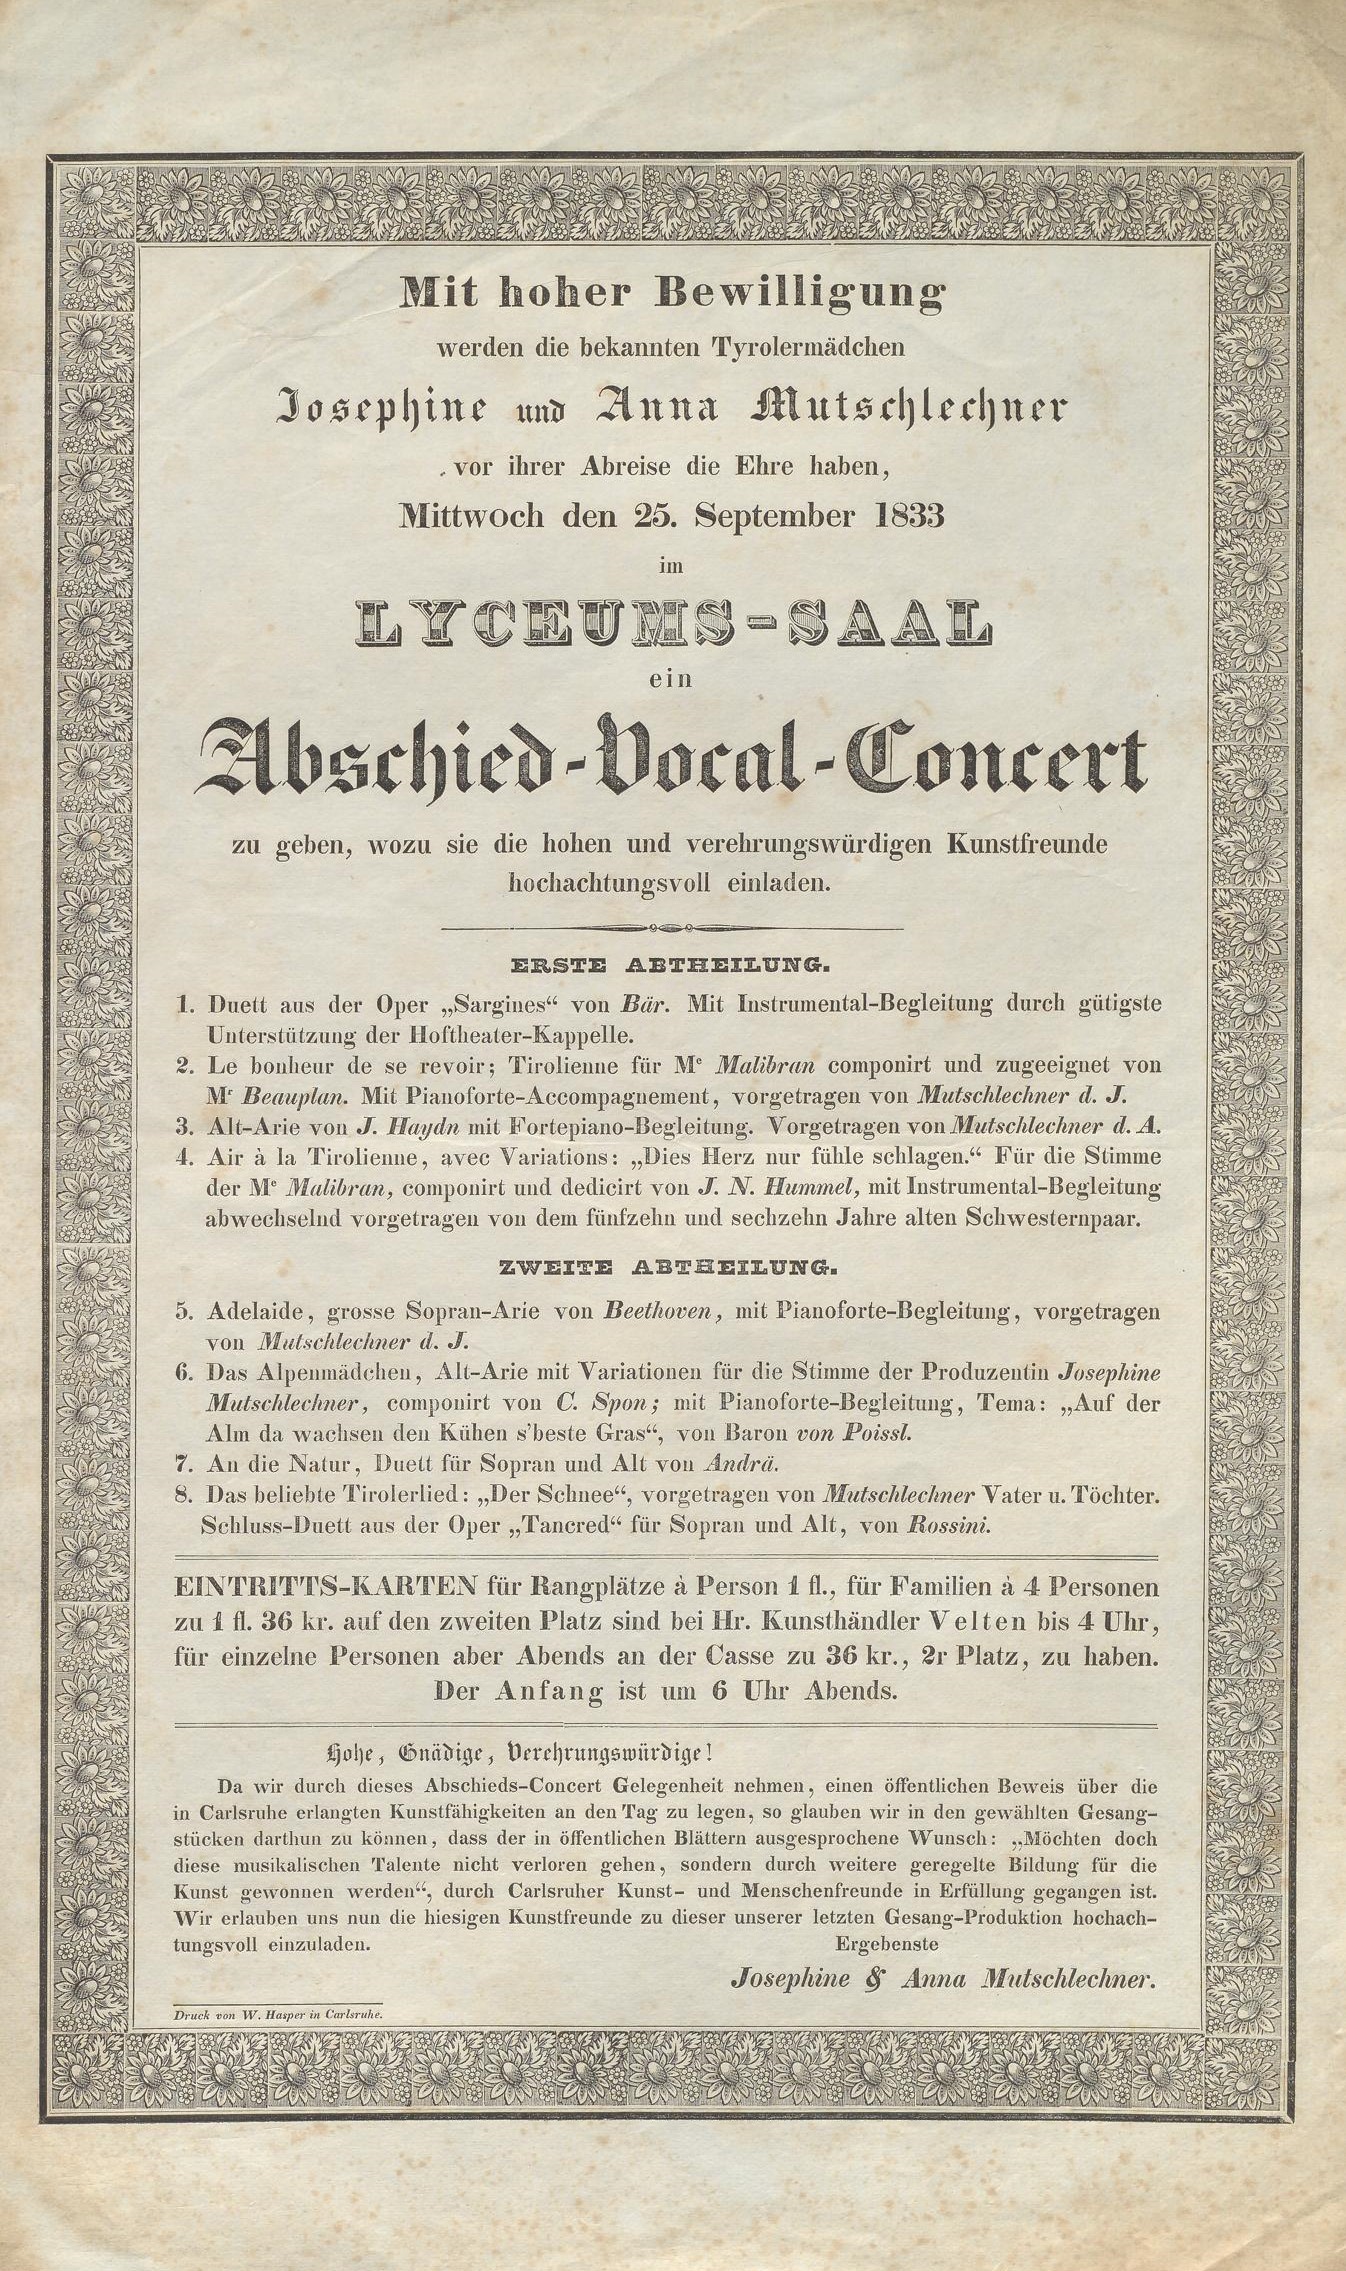 Der in Fraktur gedruckte Zettel nennt das Programm, die Uhrzeit und die Eintrittspreise für das Konzert.